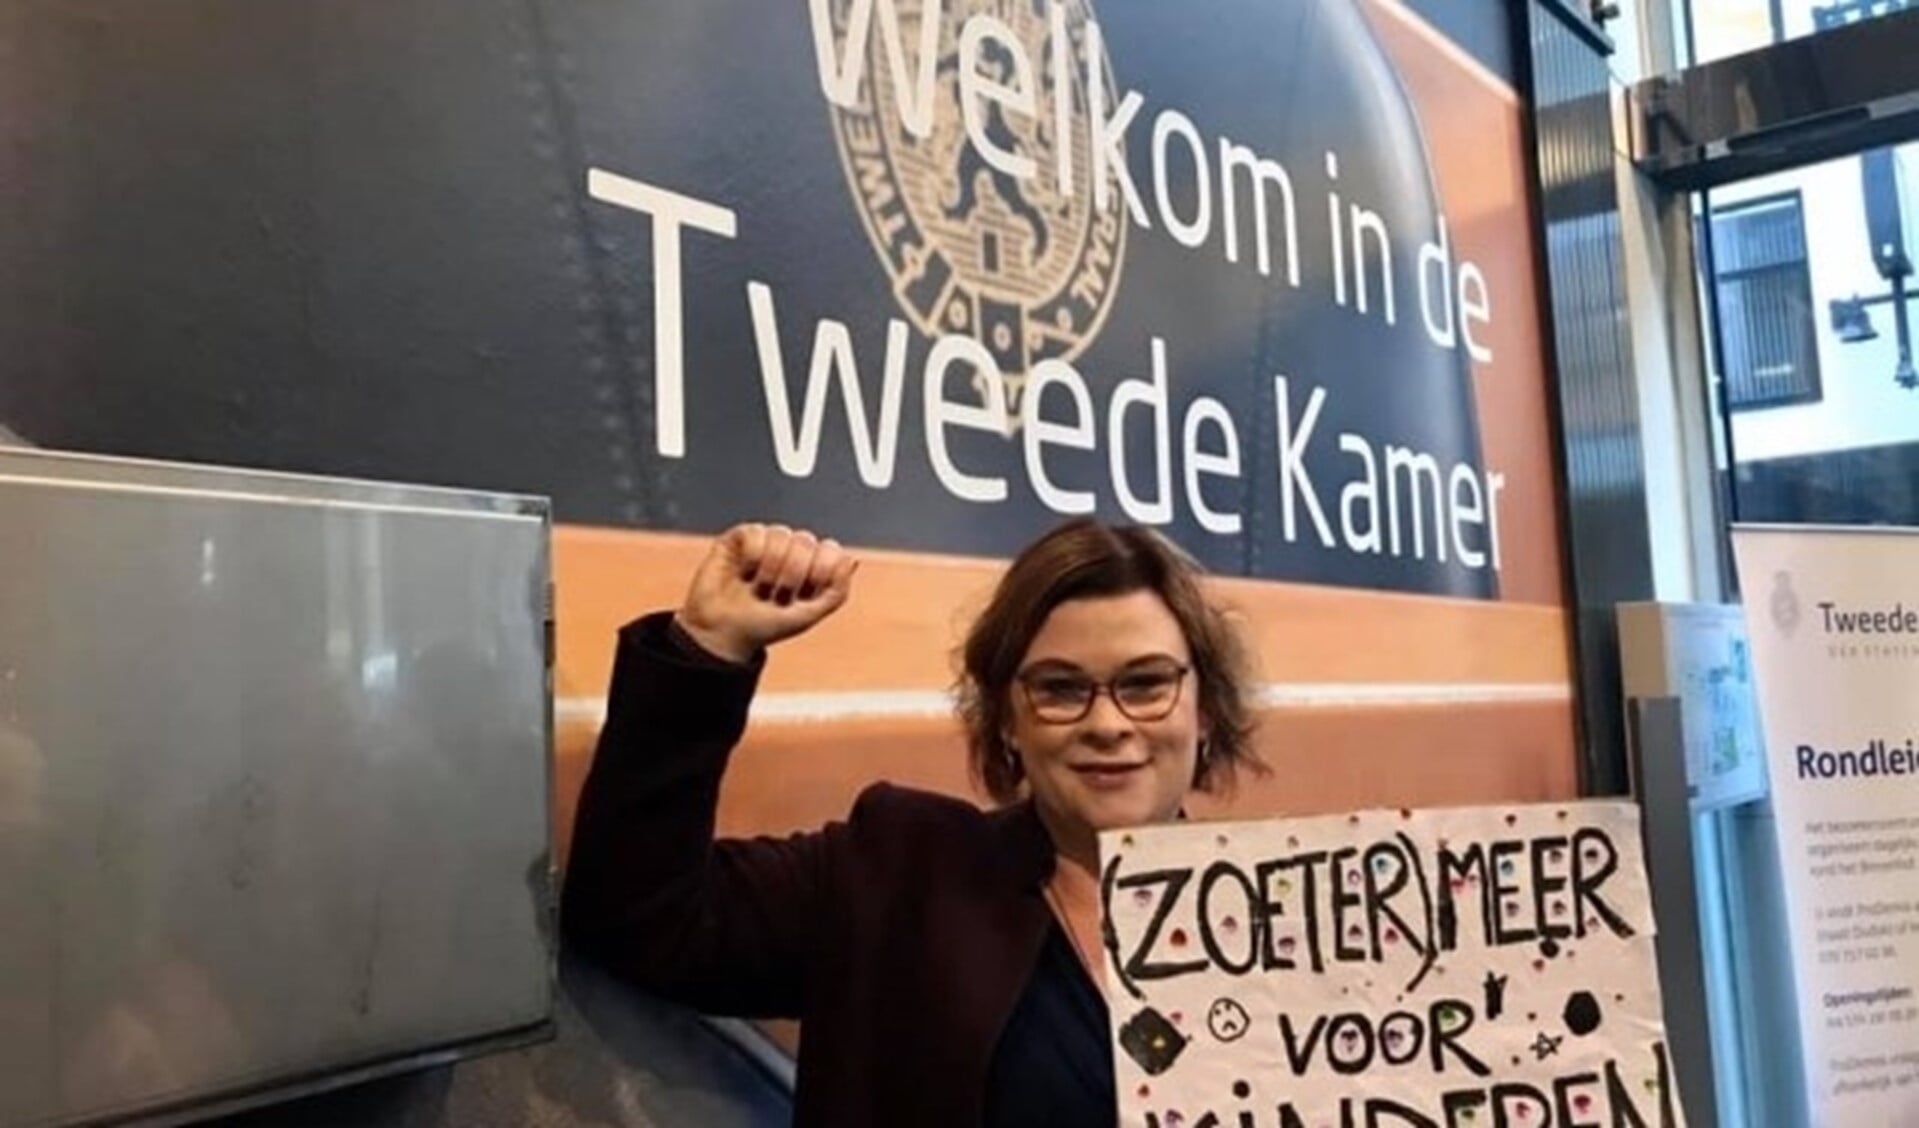 Wethouder Jakobien Groeneveld met haar protestbord dat ze bij binnenkomst moest inleveren van de beveiliging. Foto: Privécollectie